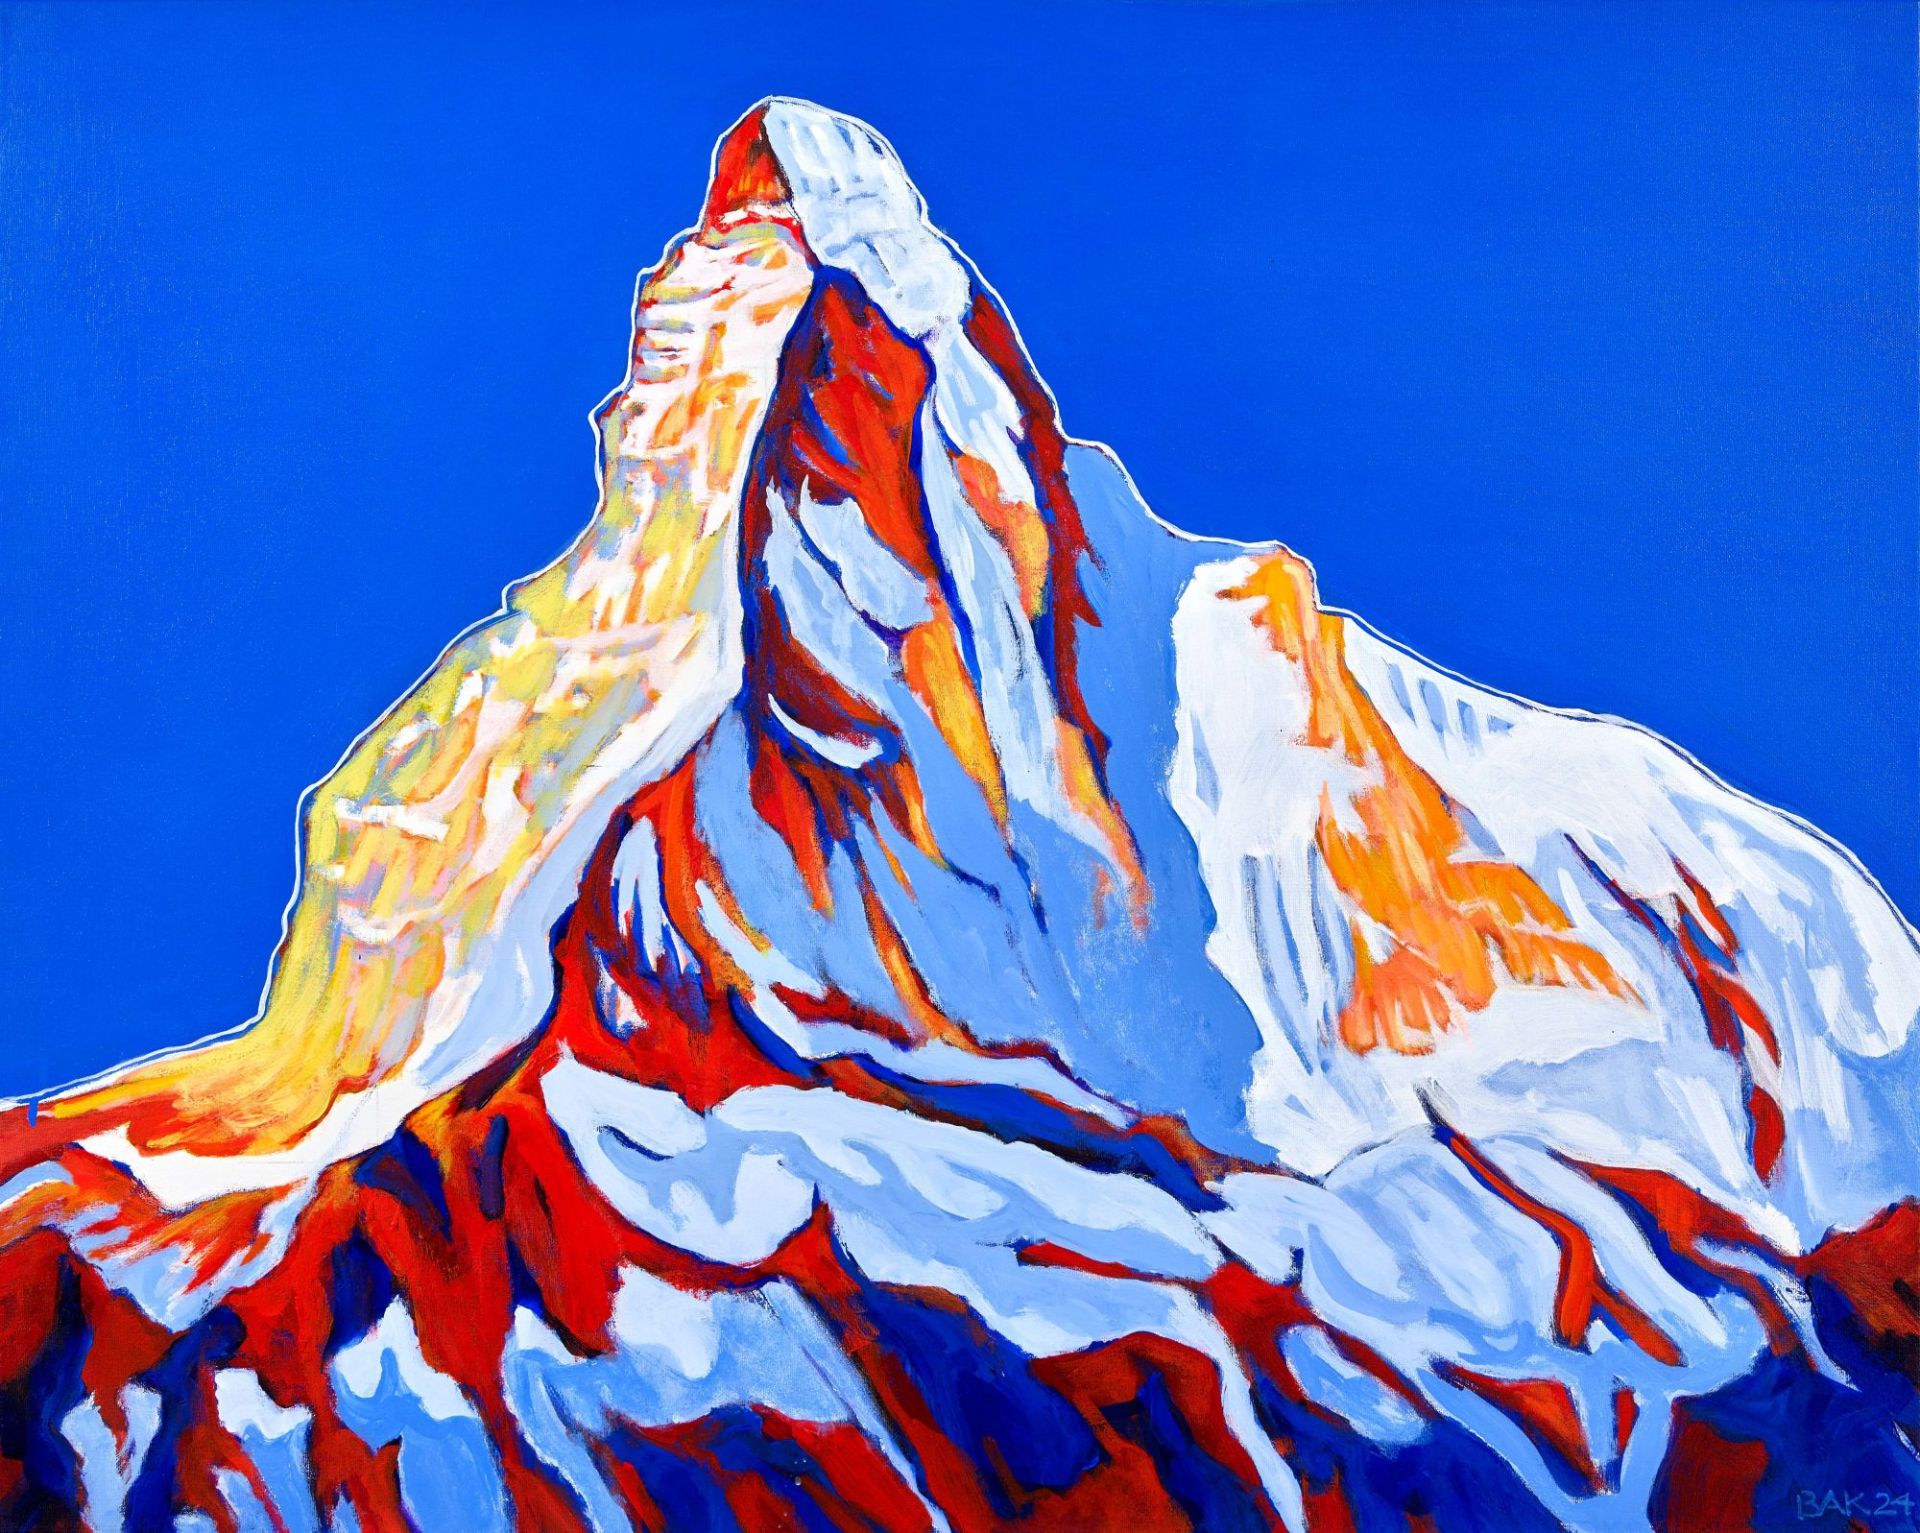 BAK (EIGTL. KRAPF, BEAT A.): "Matterhorn".